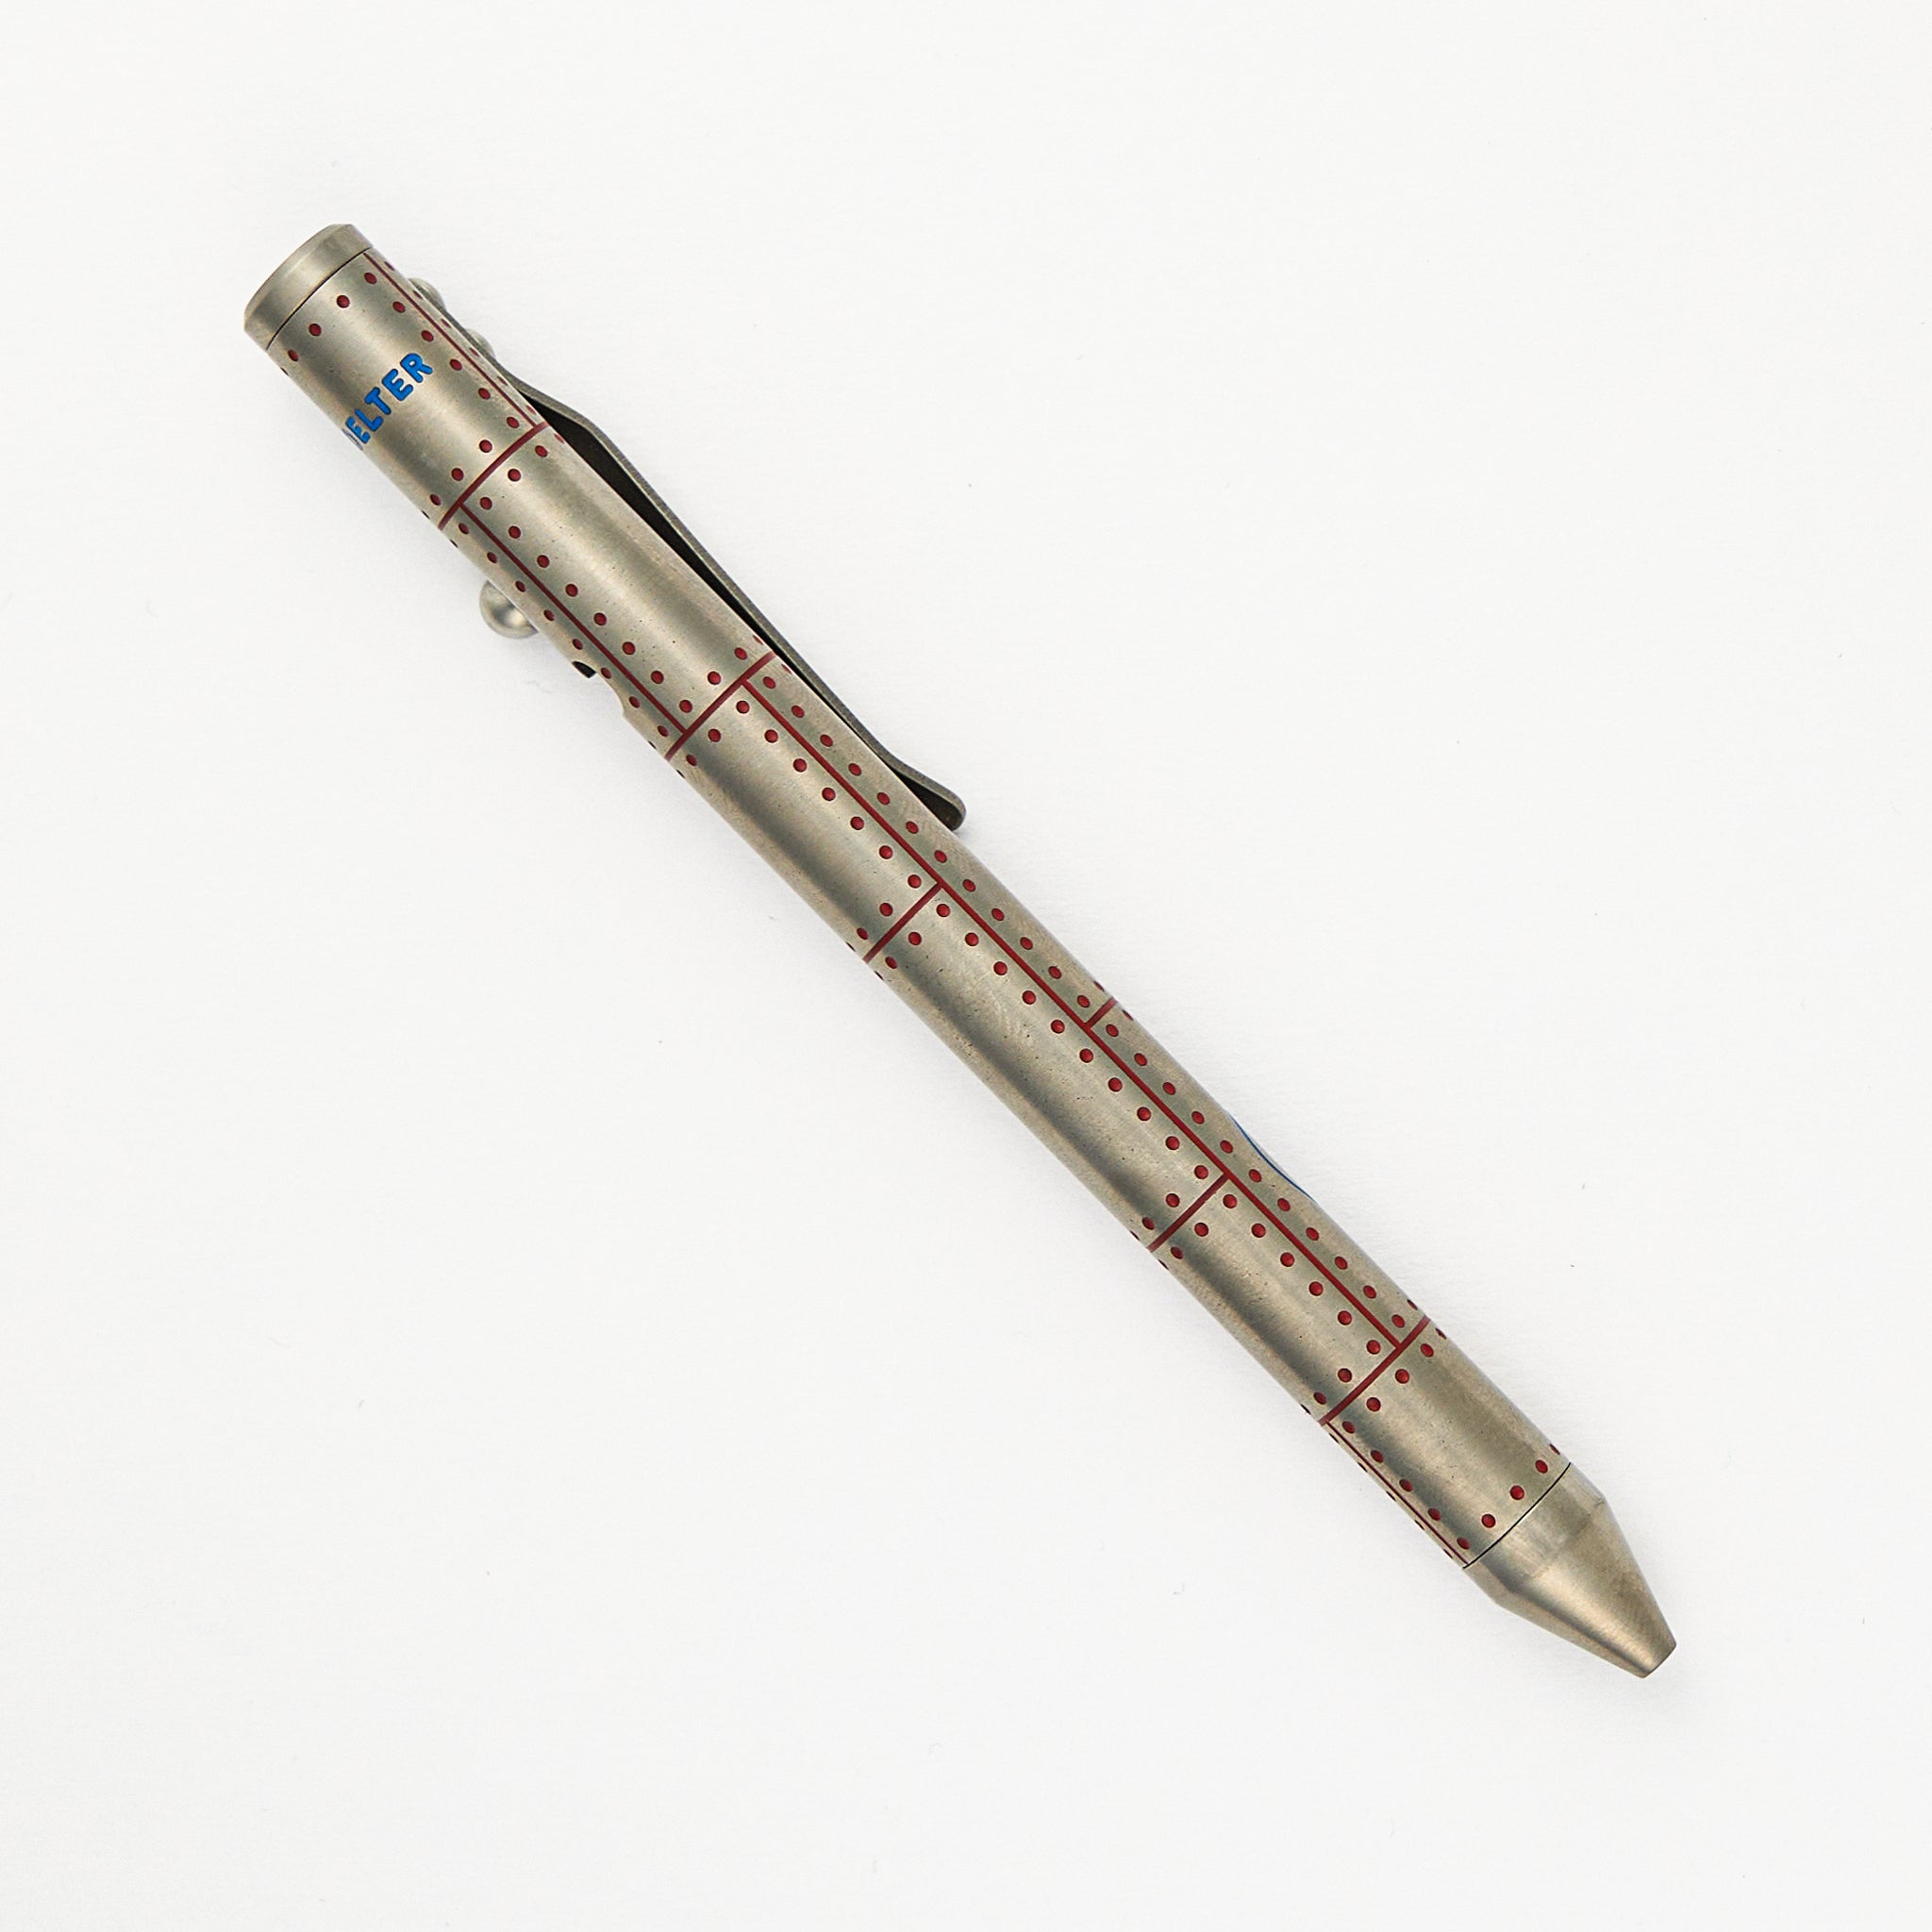 Fellhoelter/Cptn Axel Full Size TiBolt Pen - WW3 Merika Titanium